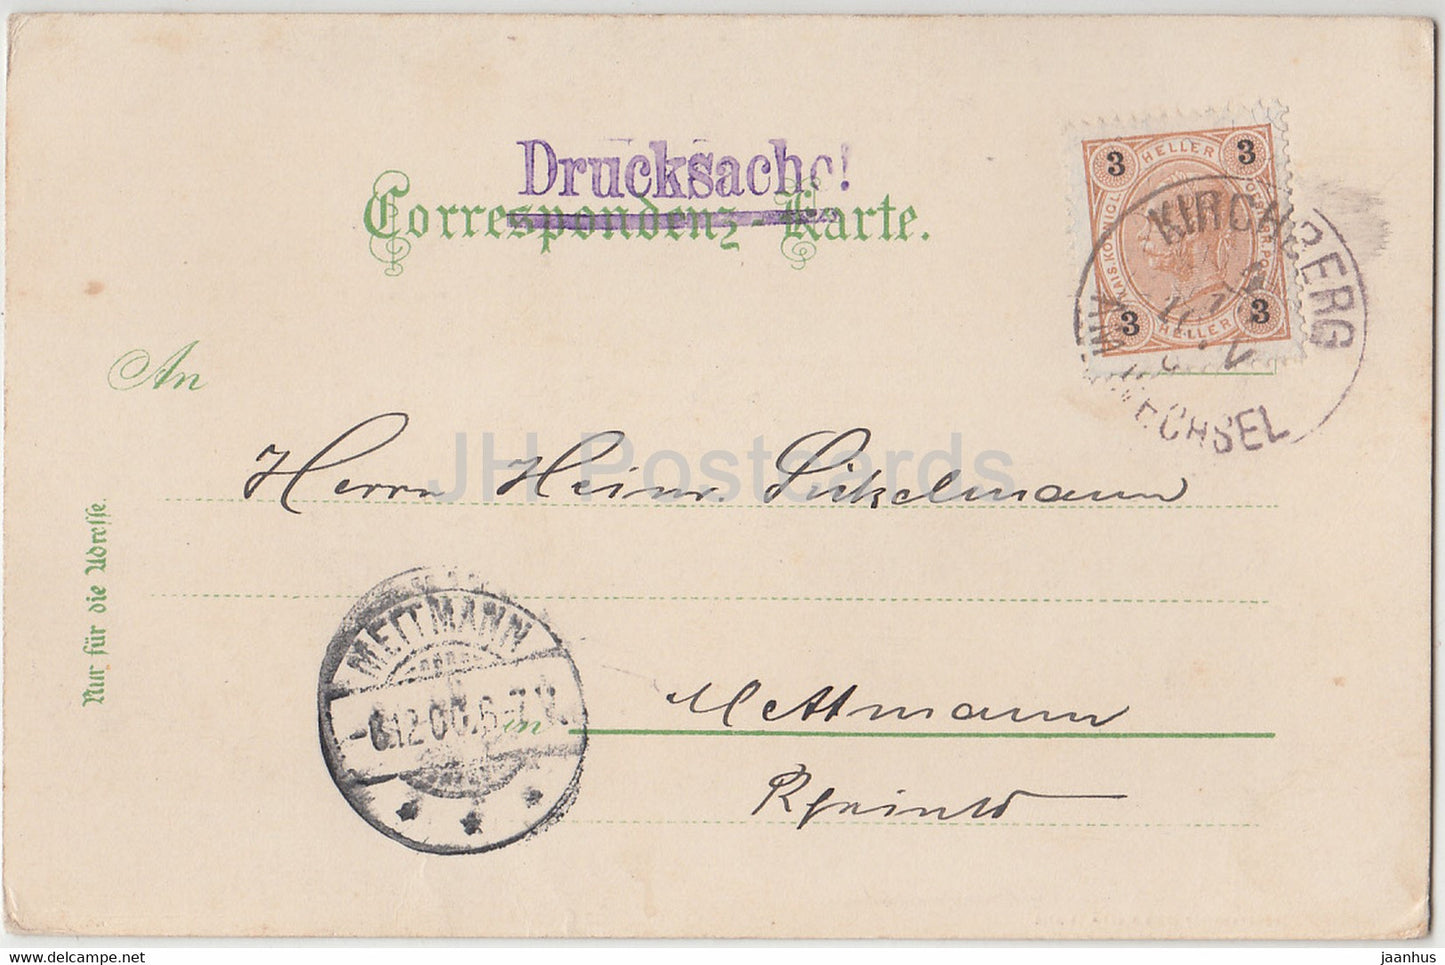 Gruss aus dem Semmering Gebiet - Kalte Rinne - Drucksache - old postcard - 1900 - Austria - used